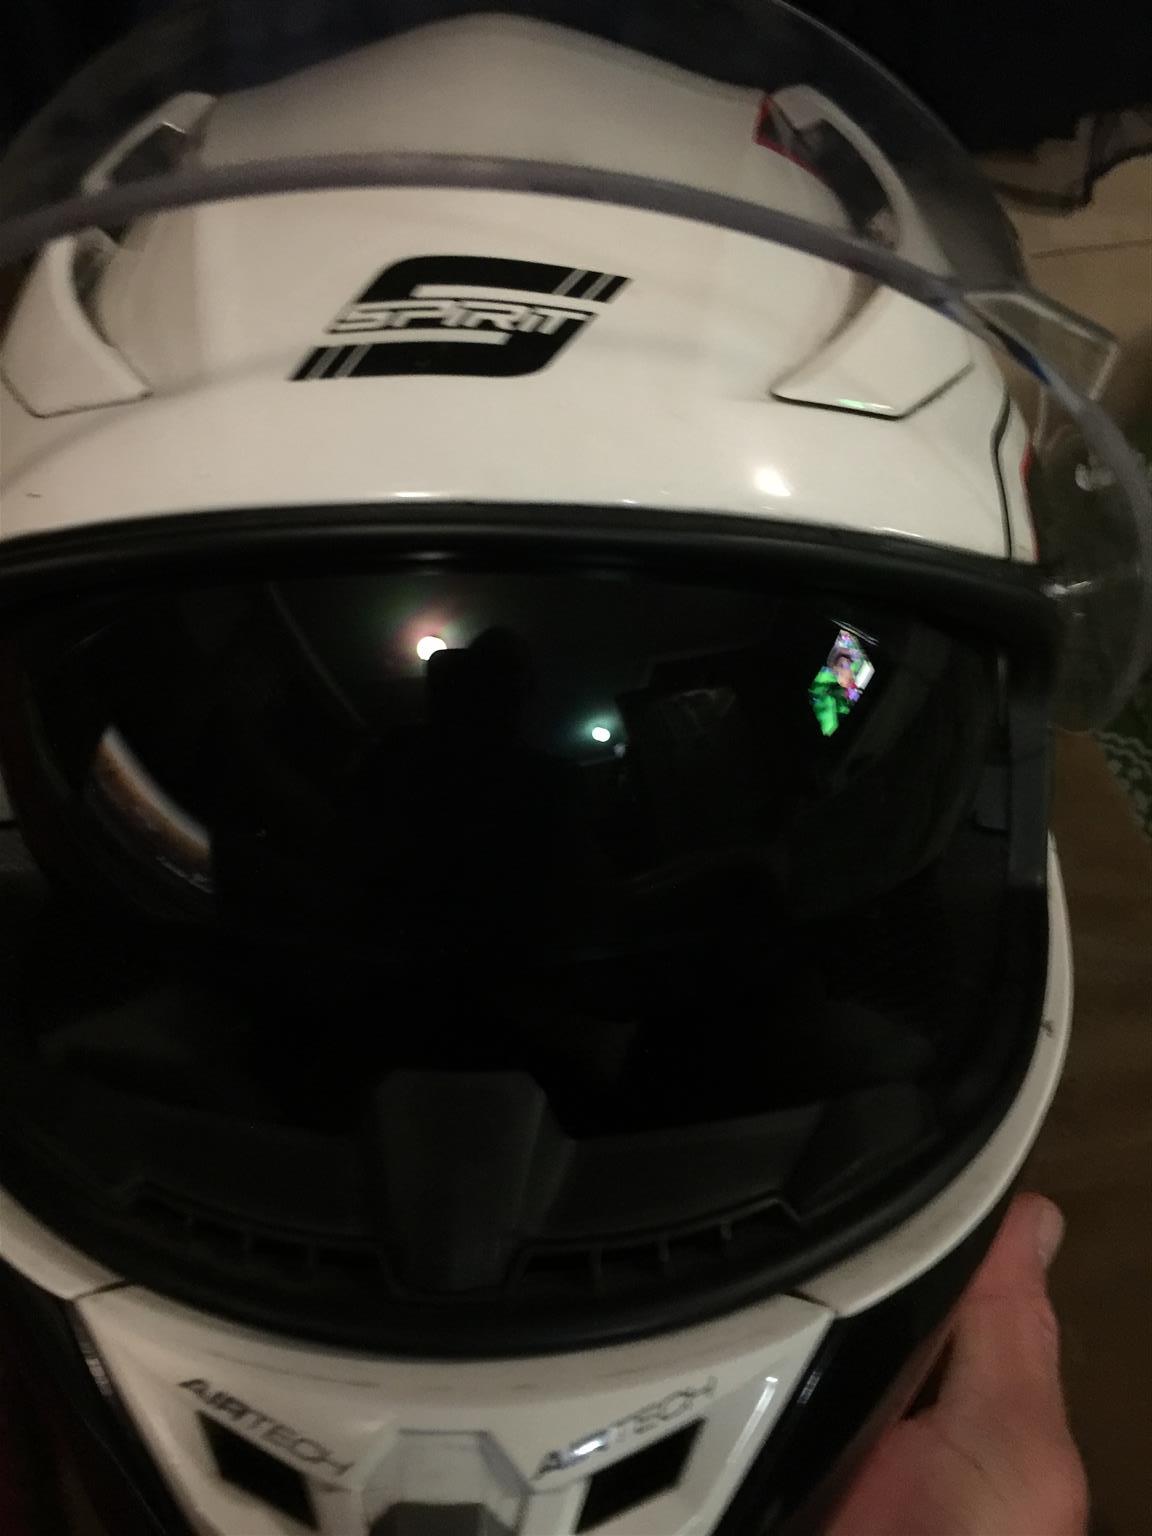 Motorcycle Gear Helmets